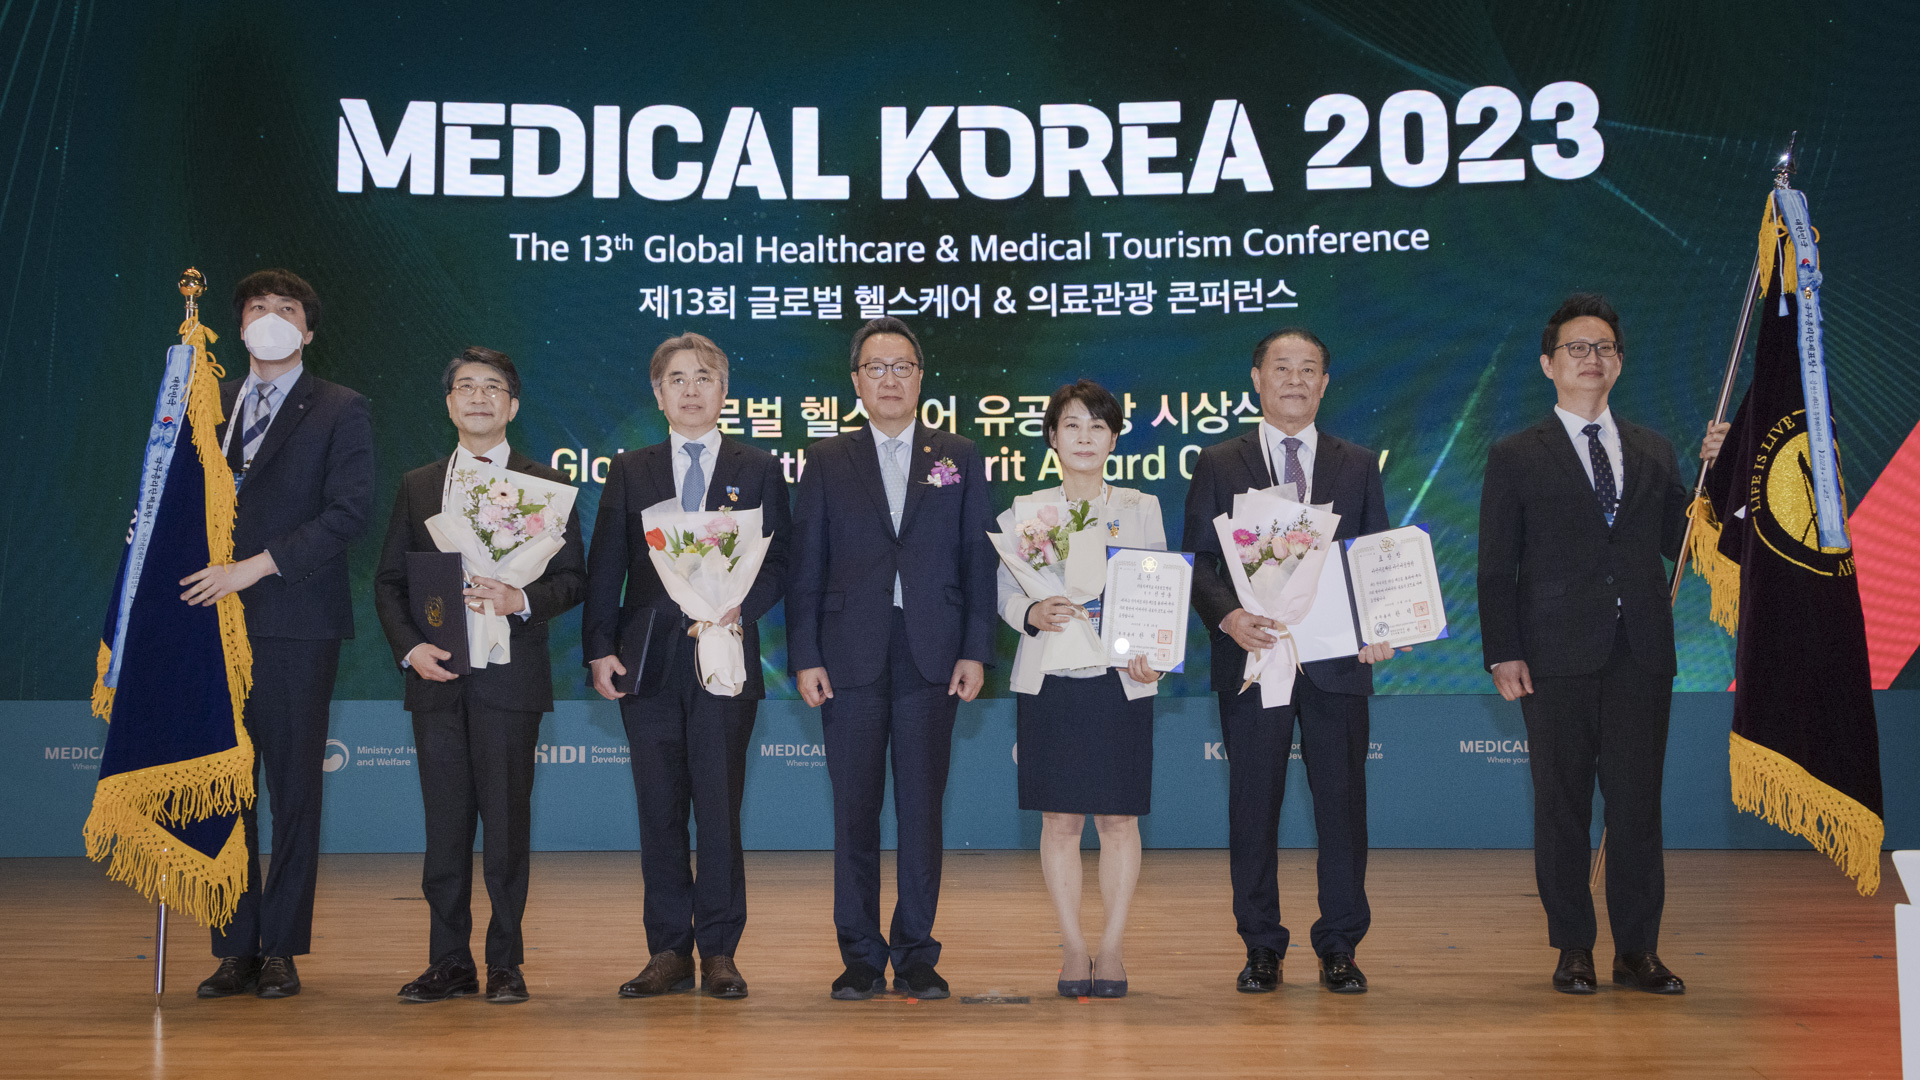 ‘더 나은 일상, 더 나은 미래를 위한 여정’ 「메디컬 코리아(Medical Korea) 2023」 사진25